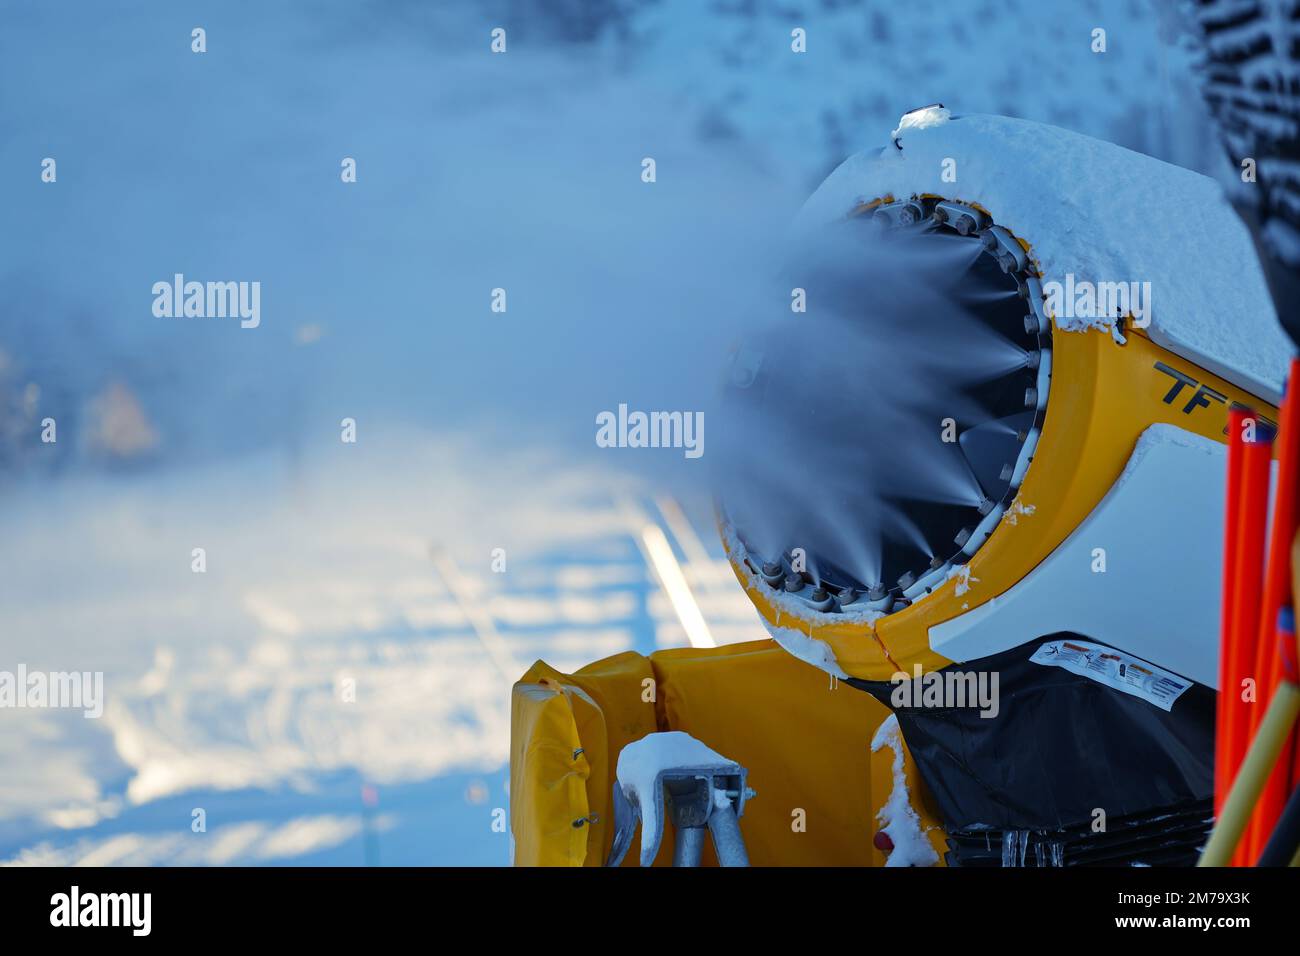 Cañón de nieve en las montañas de invierno. Pistola de nieve rociando cristales de hielo artificiales. Máquina haciendo nieve Foto de stock